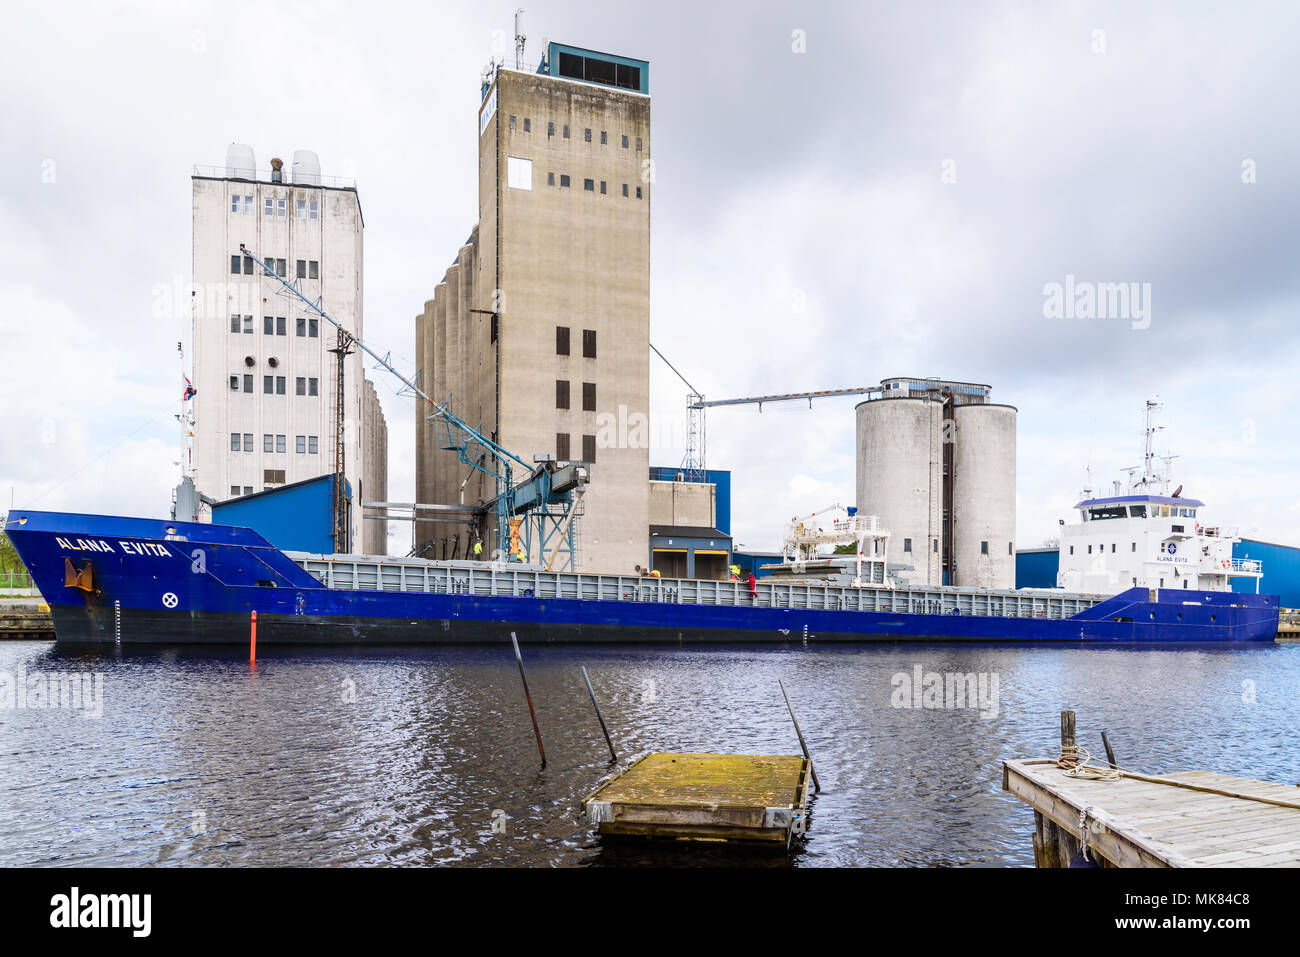 Ahus, Suecia - Abril 26, 2018: Viaje documental de la vida cotidiana y el medio ambiente. Los trabajadores cargando el grano en un buque de carga azul en el puerto en un cl Foto de stock